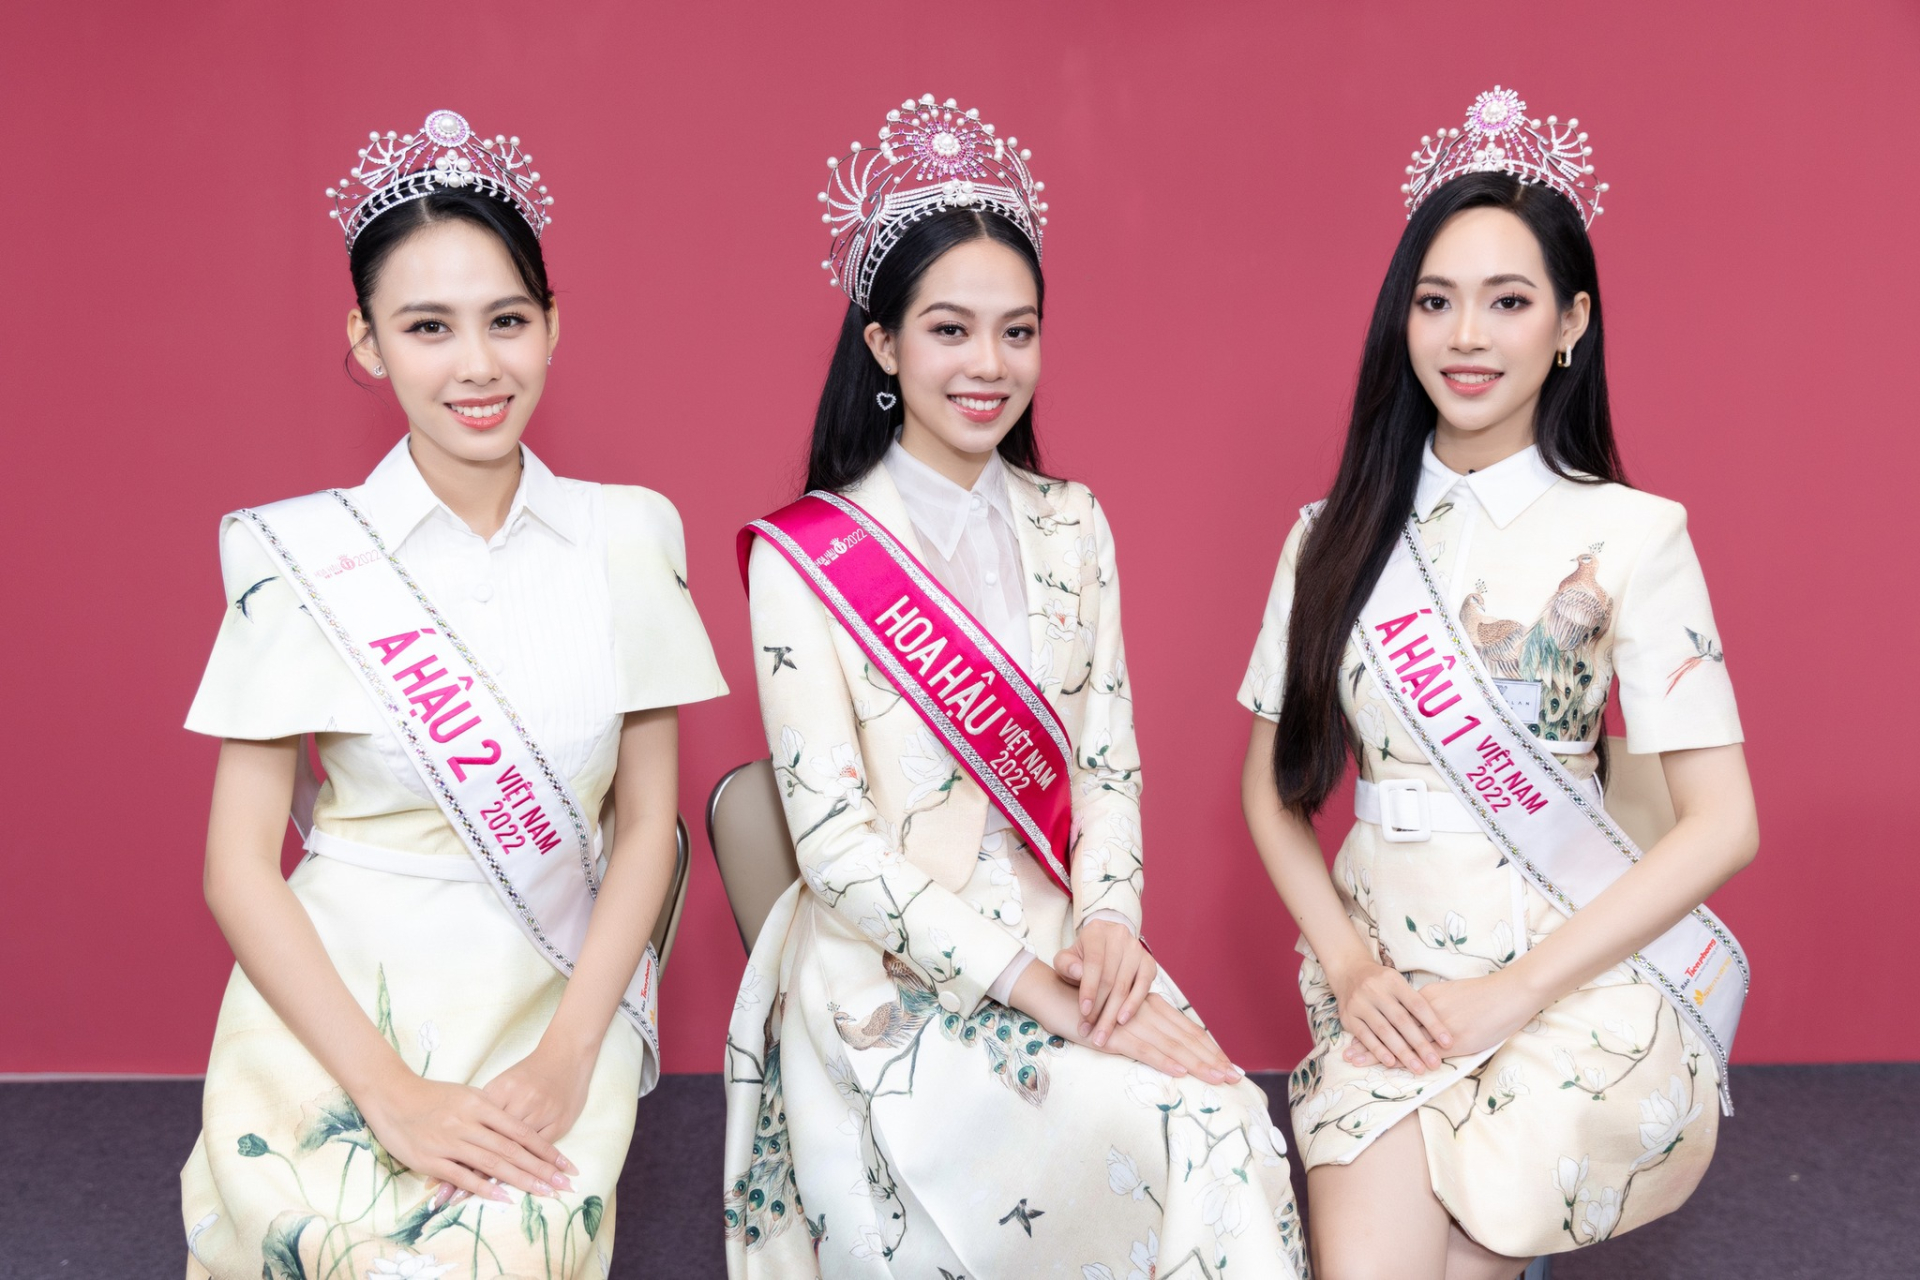 Top 3 Hoa hậu Việt Nam 2022 nói về những tranh cãi nhan sắc, Hoa hậu Thanh Thủy lên tiếng về tin đồn tình cảm - ảnh 7